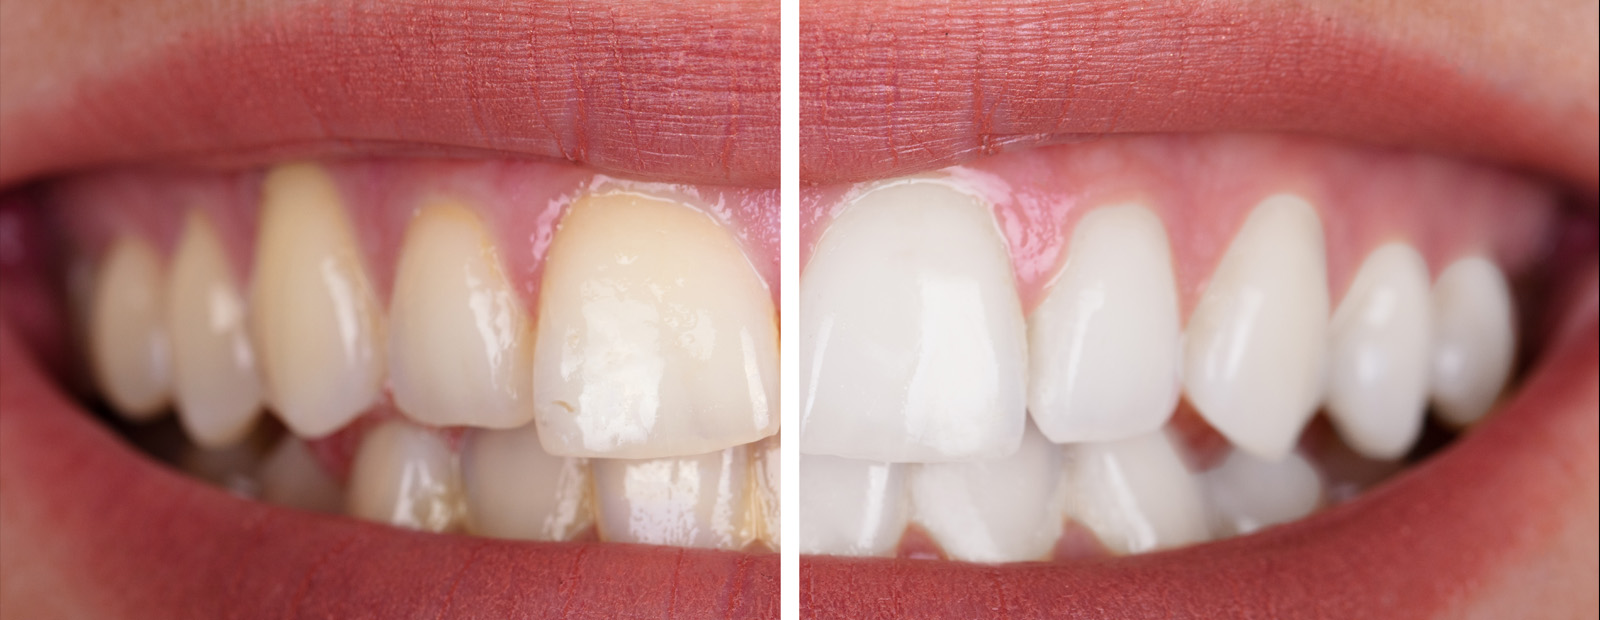 Nach zahn wurzelbehandlung sich grau verfärbt Toter Zahn